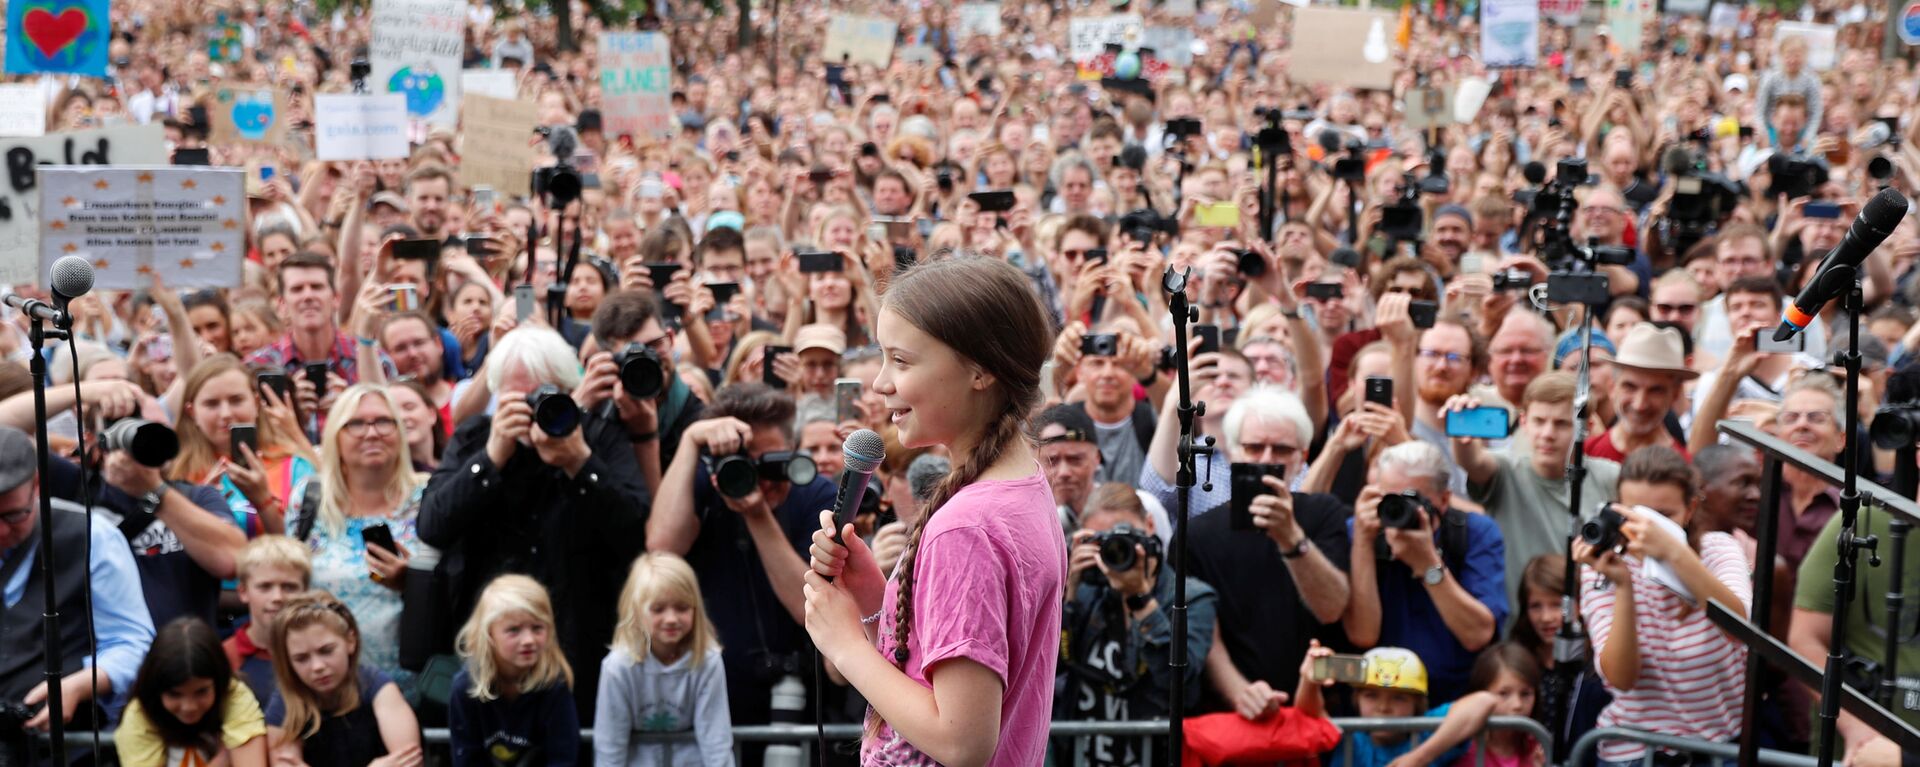 Шведская активистка Грета Тунберг во время акции Пятницы ради будущего в Берлине. 19 июля 2019 - Sputnik Latvija, 1920, 30.07.2019